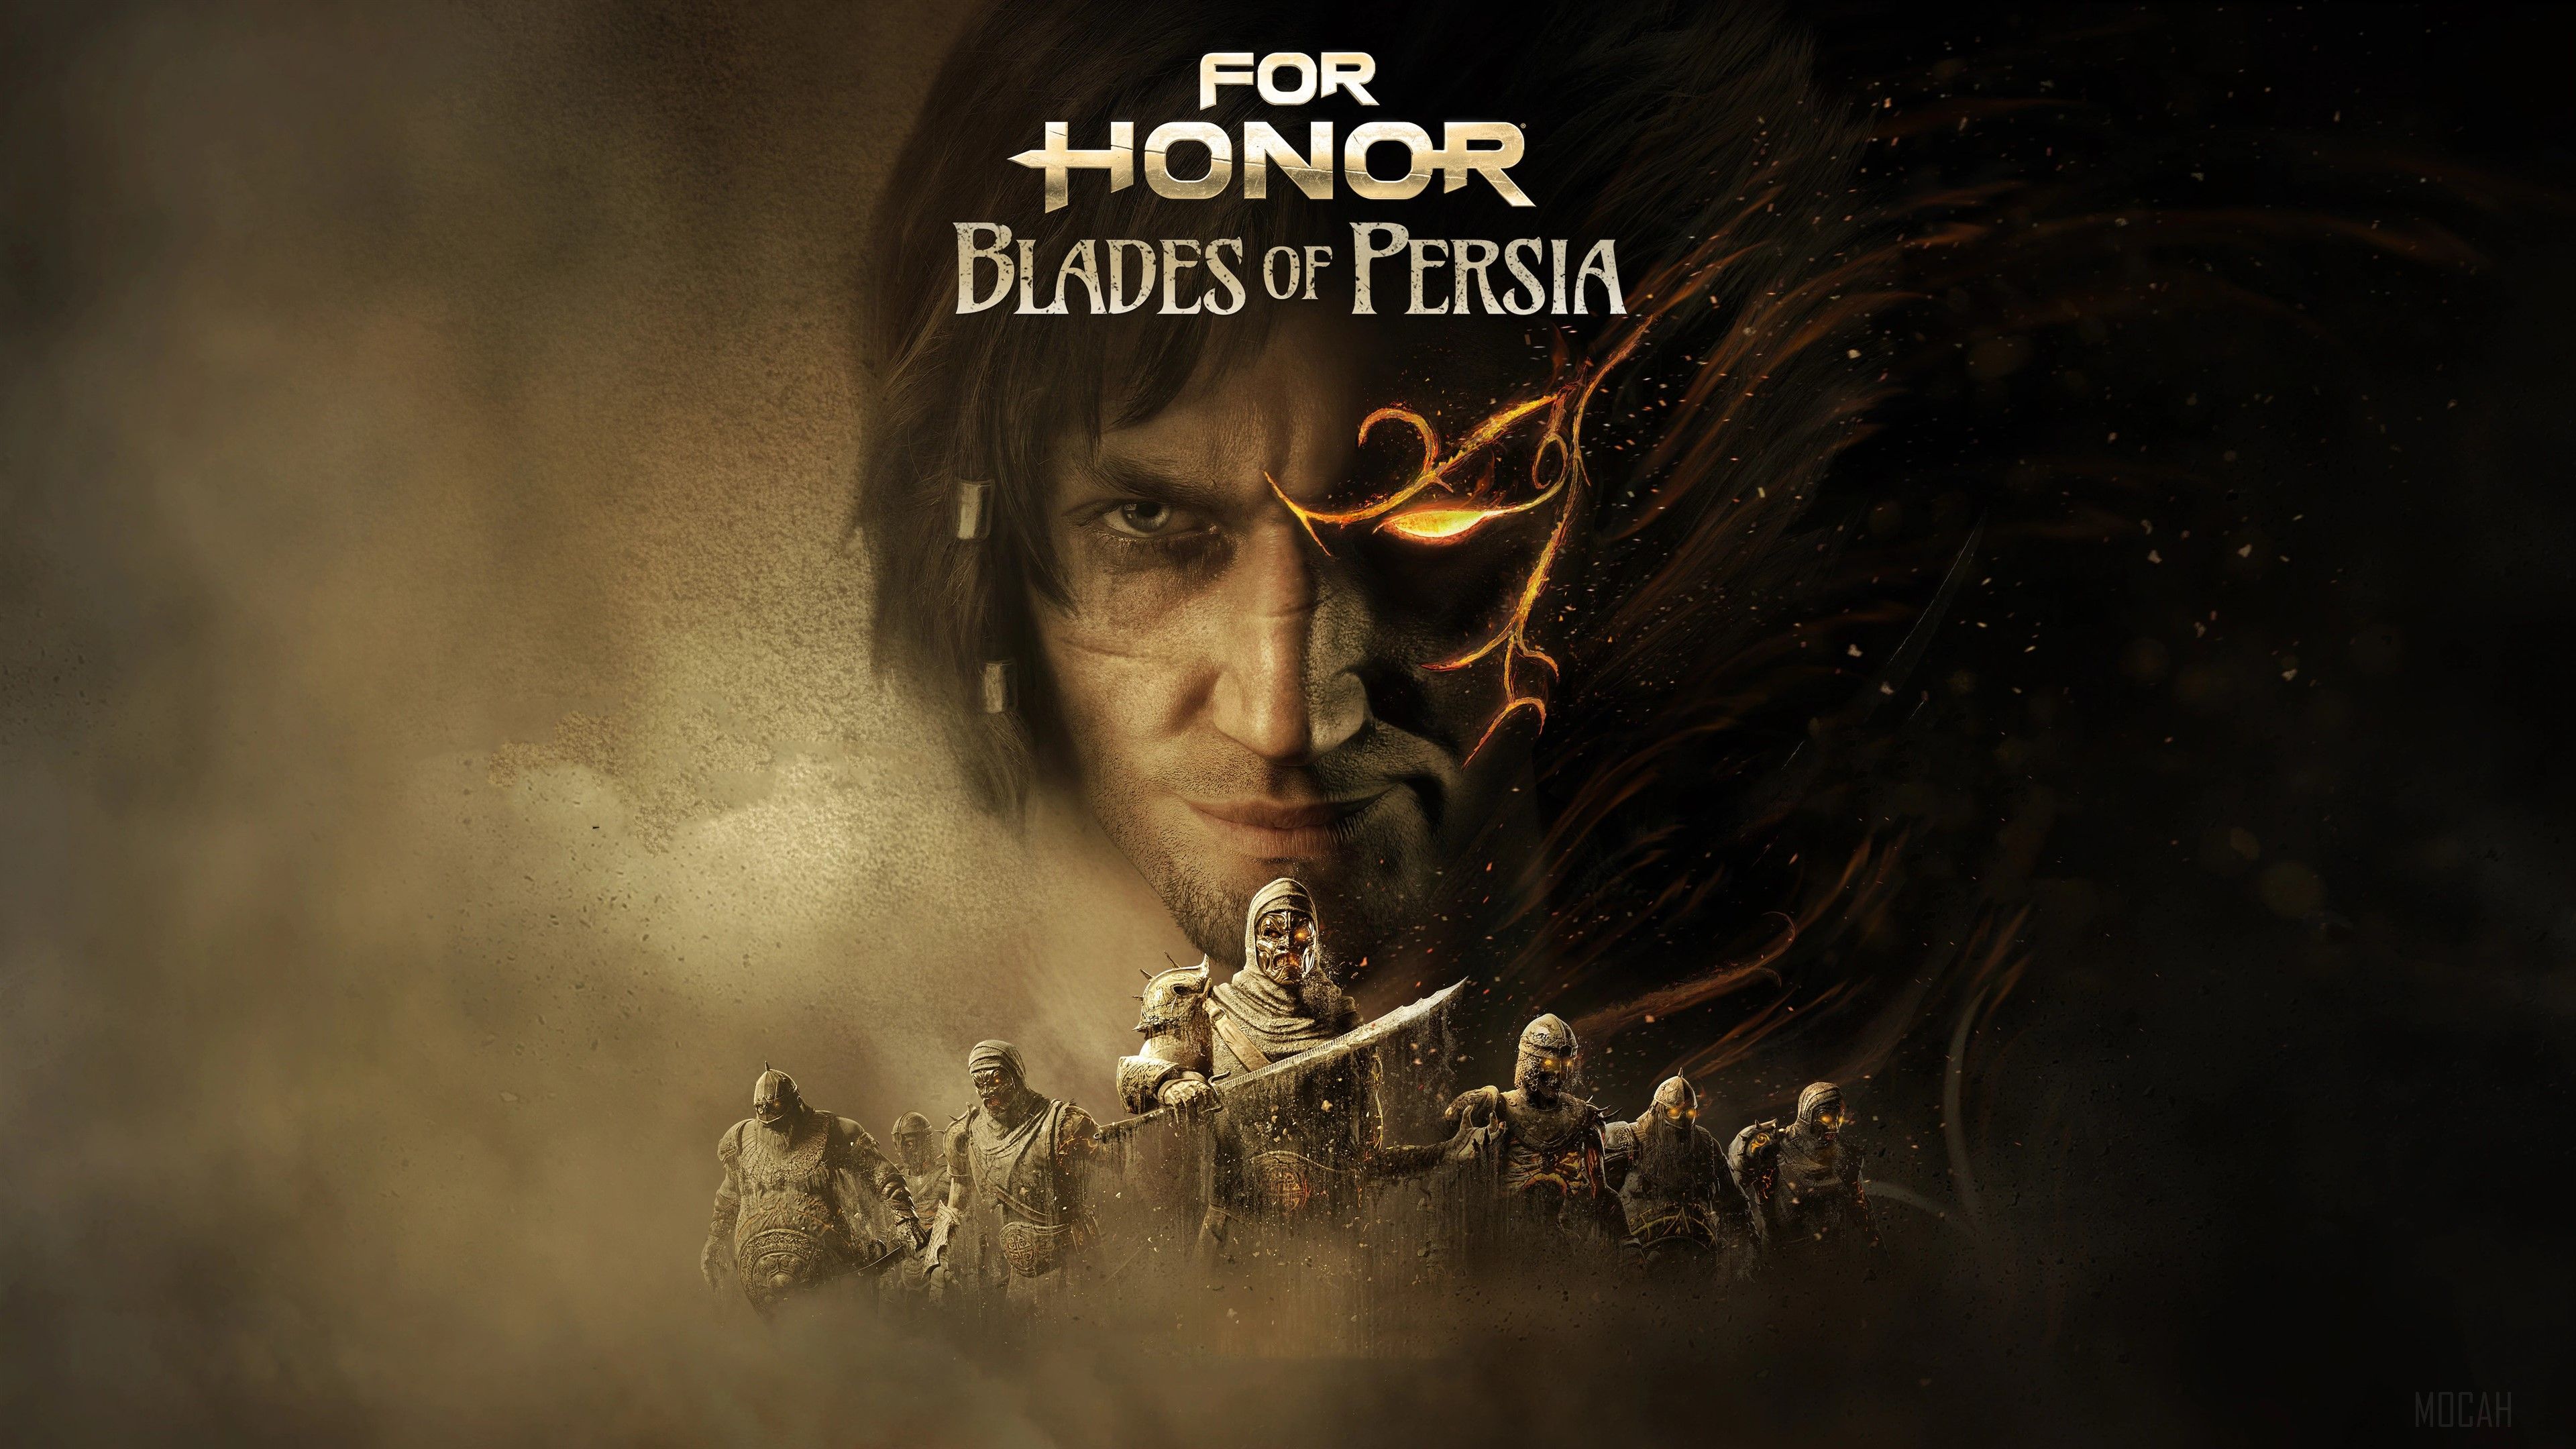 Prince of Persia For Honor 4k wallpaper. Mocah HD Wallpaper